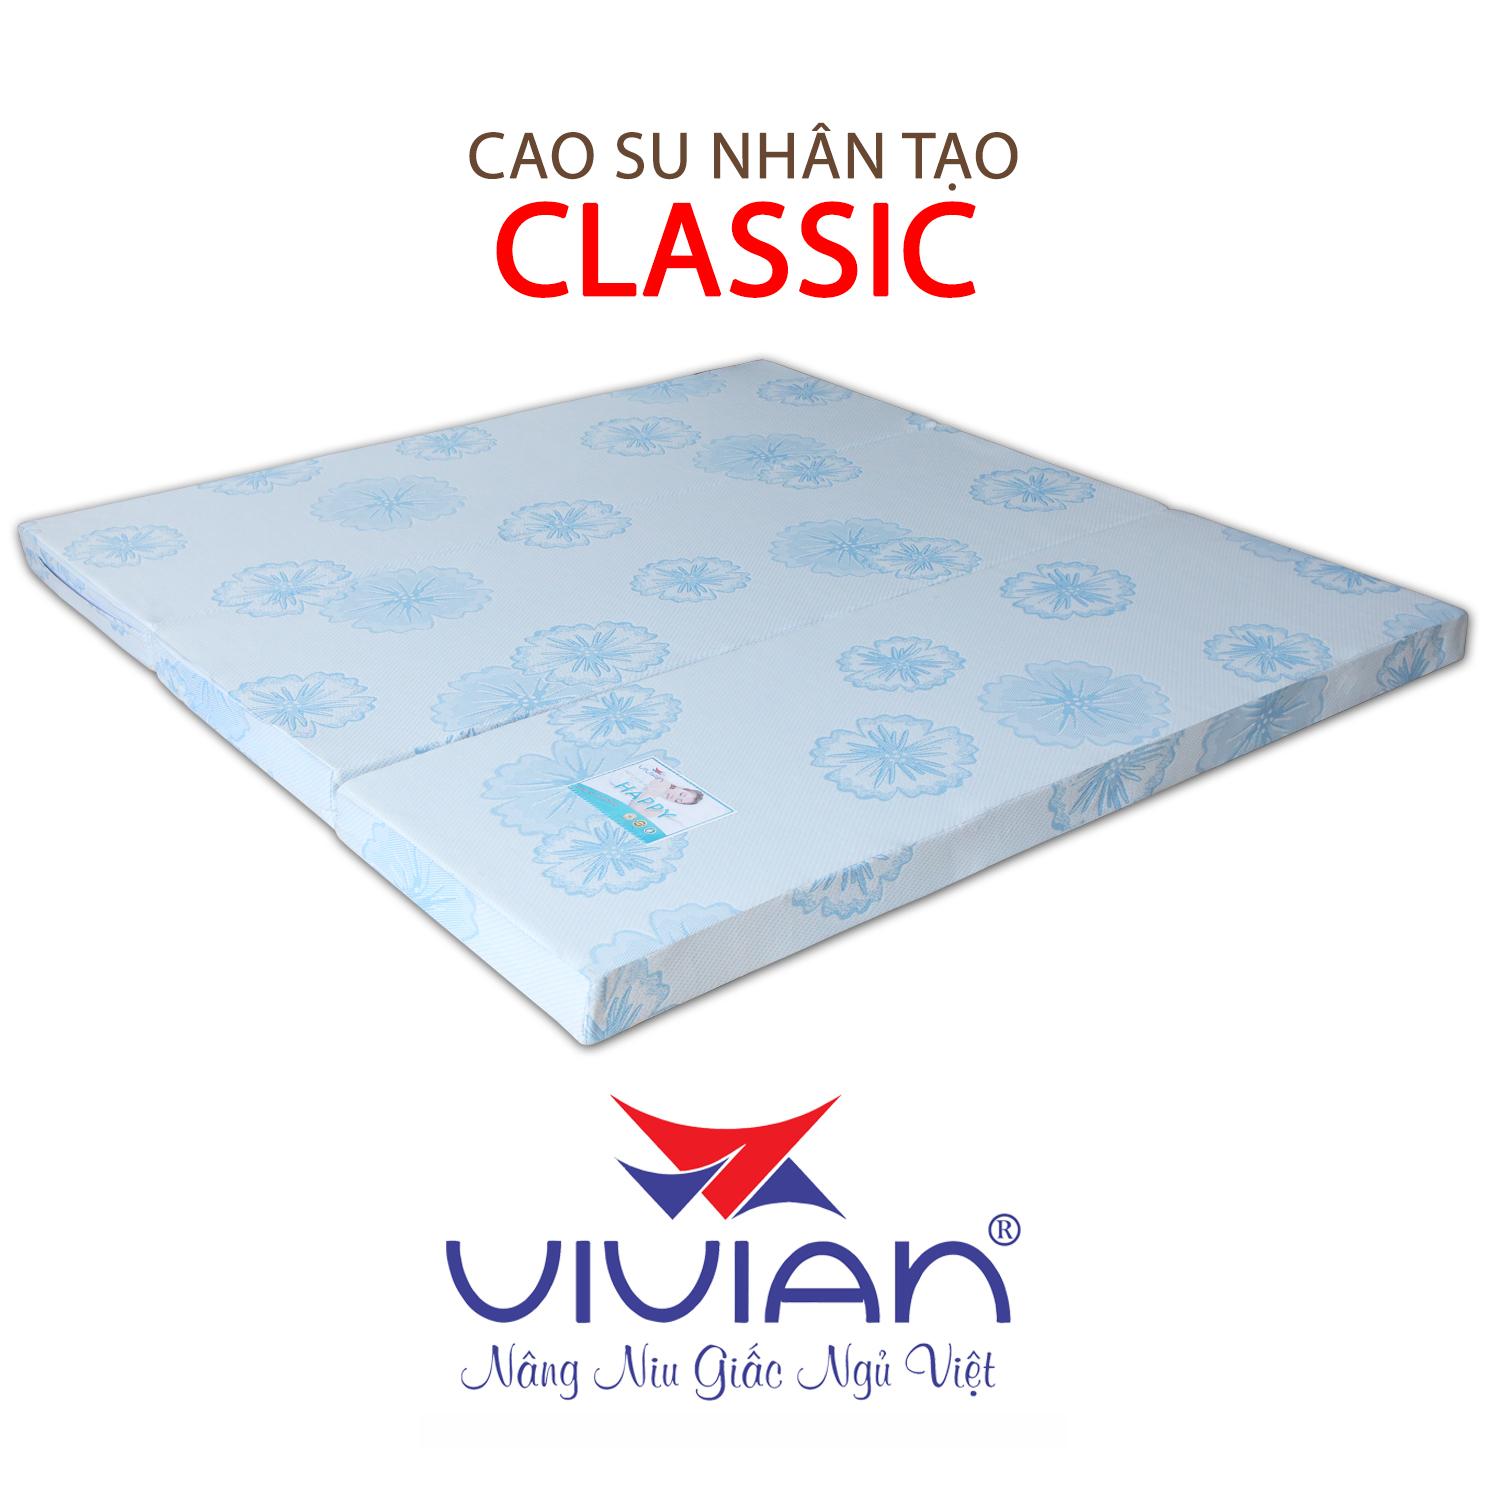 NỆM CAO SU NHÂN TẠO CLASSIC GẤP 3 VIVIAN 160X200X5